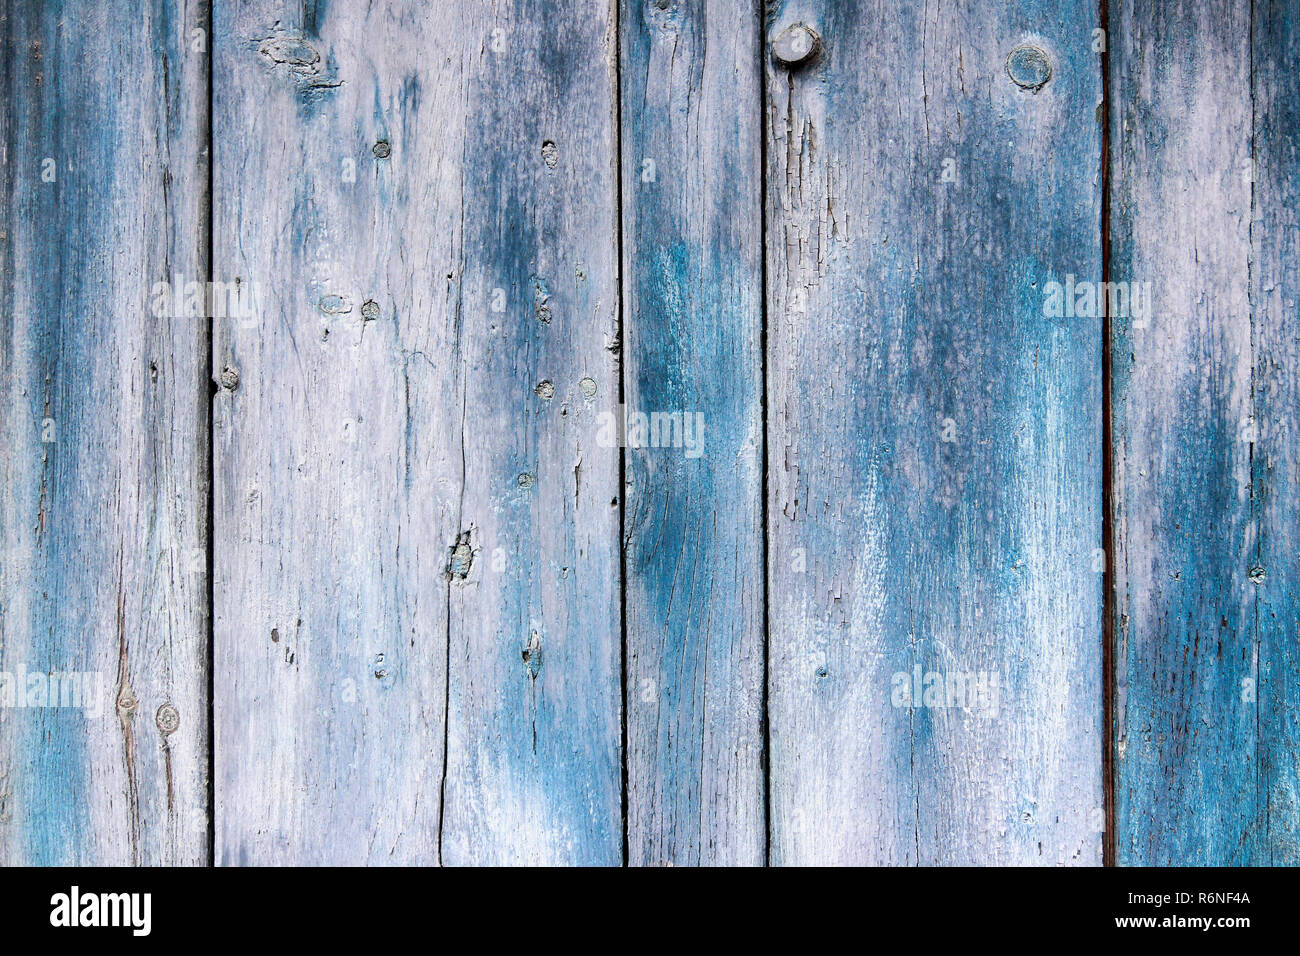 Imbianchiti vernice blu su legno - legno texture vignette Foto Stock